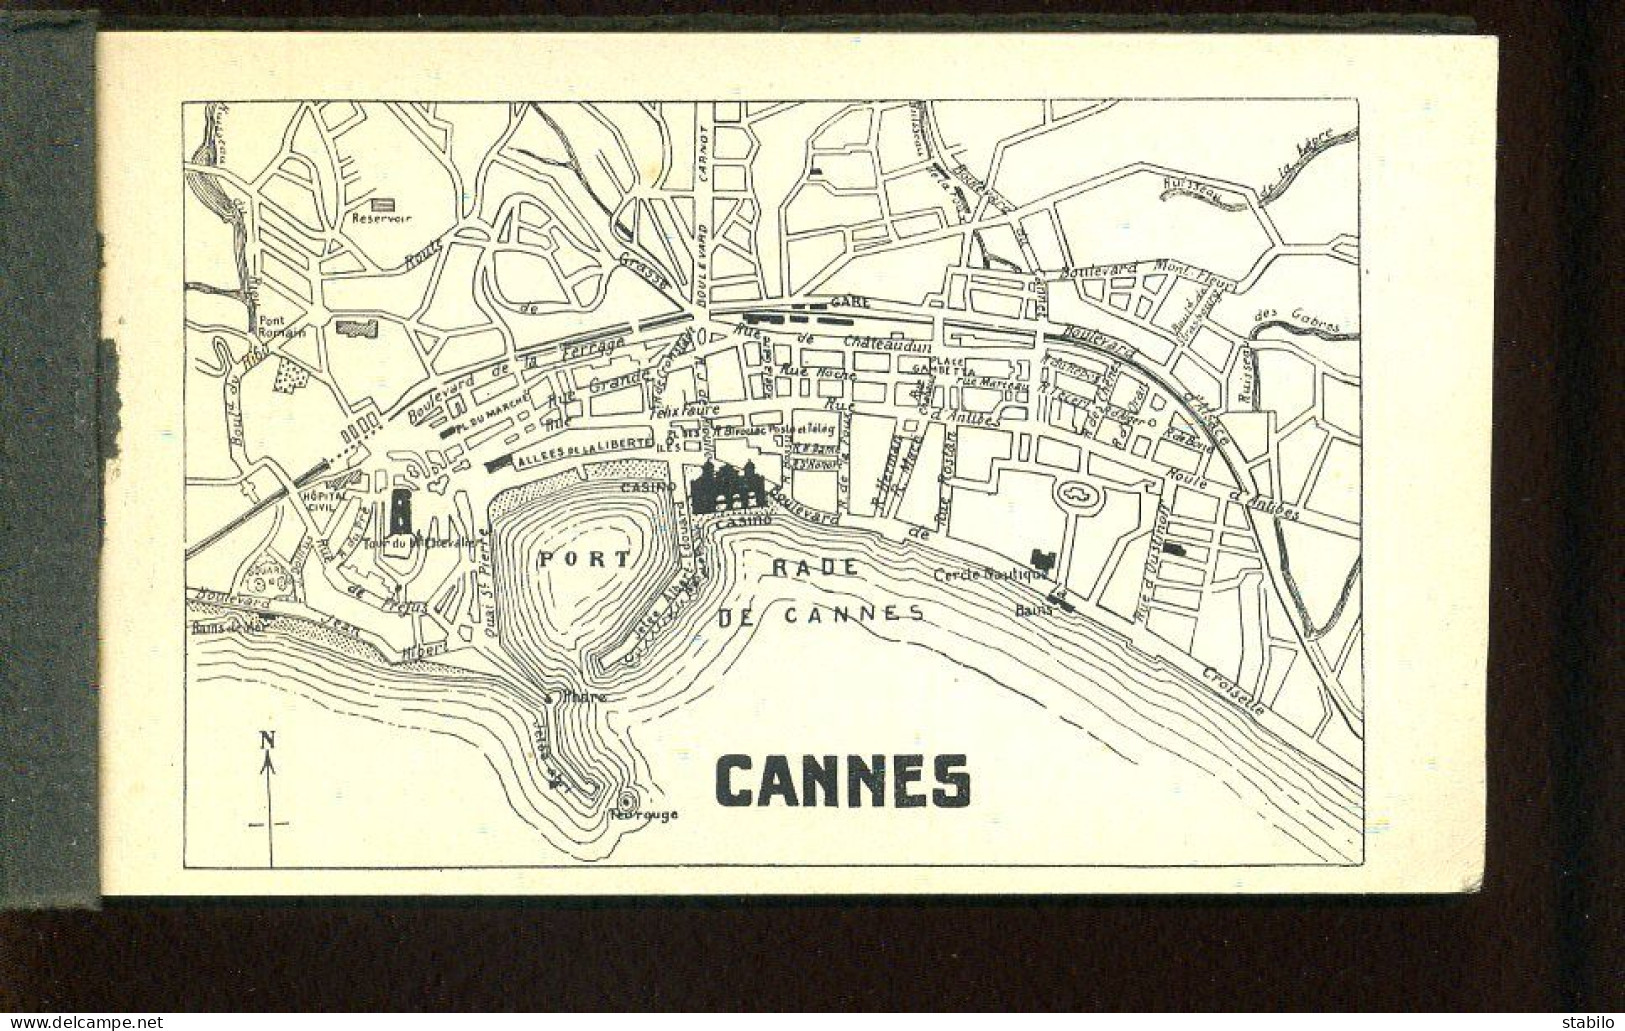 06 - CANNES - CARNET DE 24 CARTES  - PLAN - Cannes